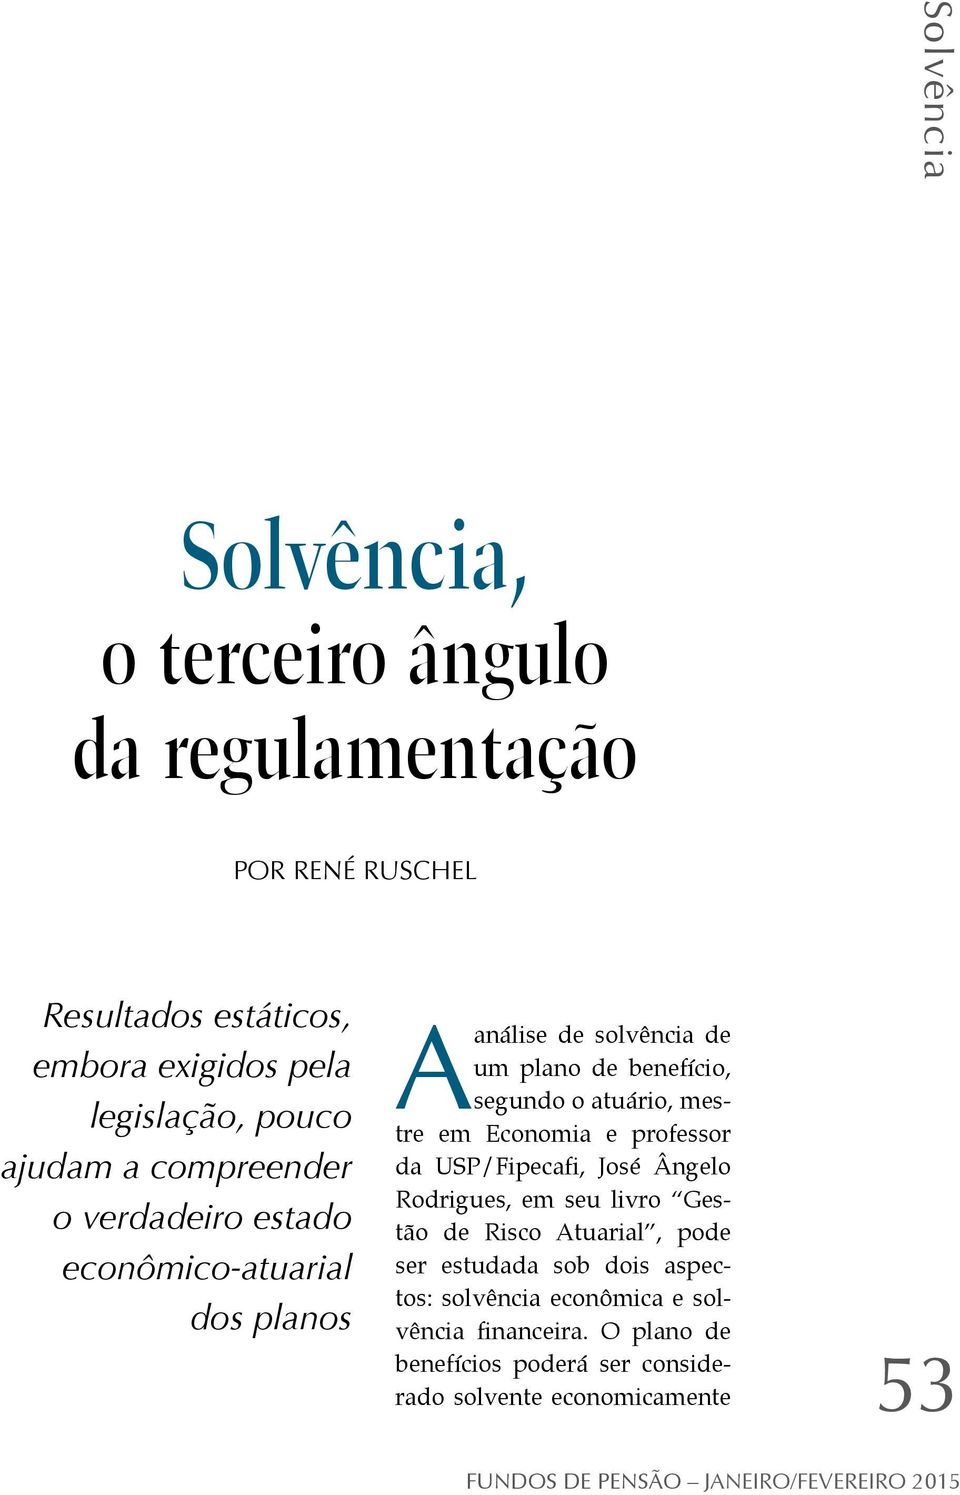 o atuário, mestre em Economia e professor da USP/Fipecafi, José Ângelo Rodrigues, em seu livro Gestão de Risco Atuarial, pode ser